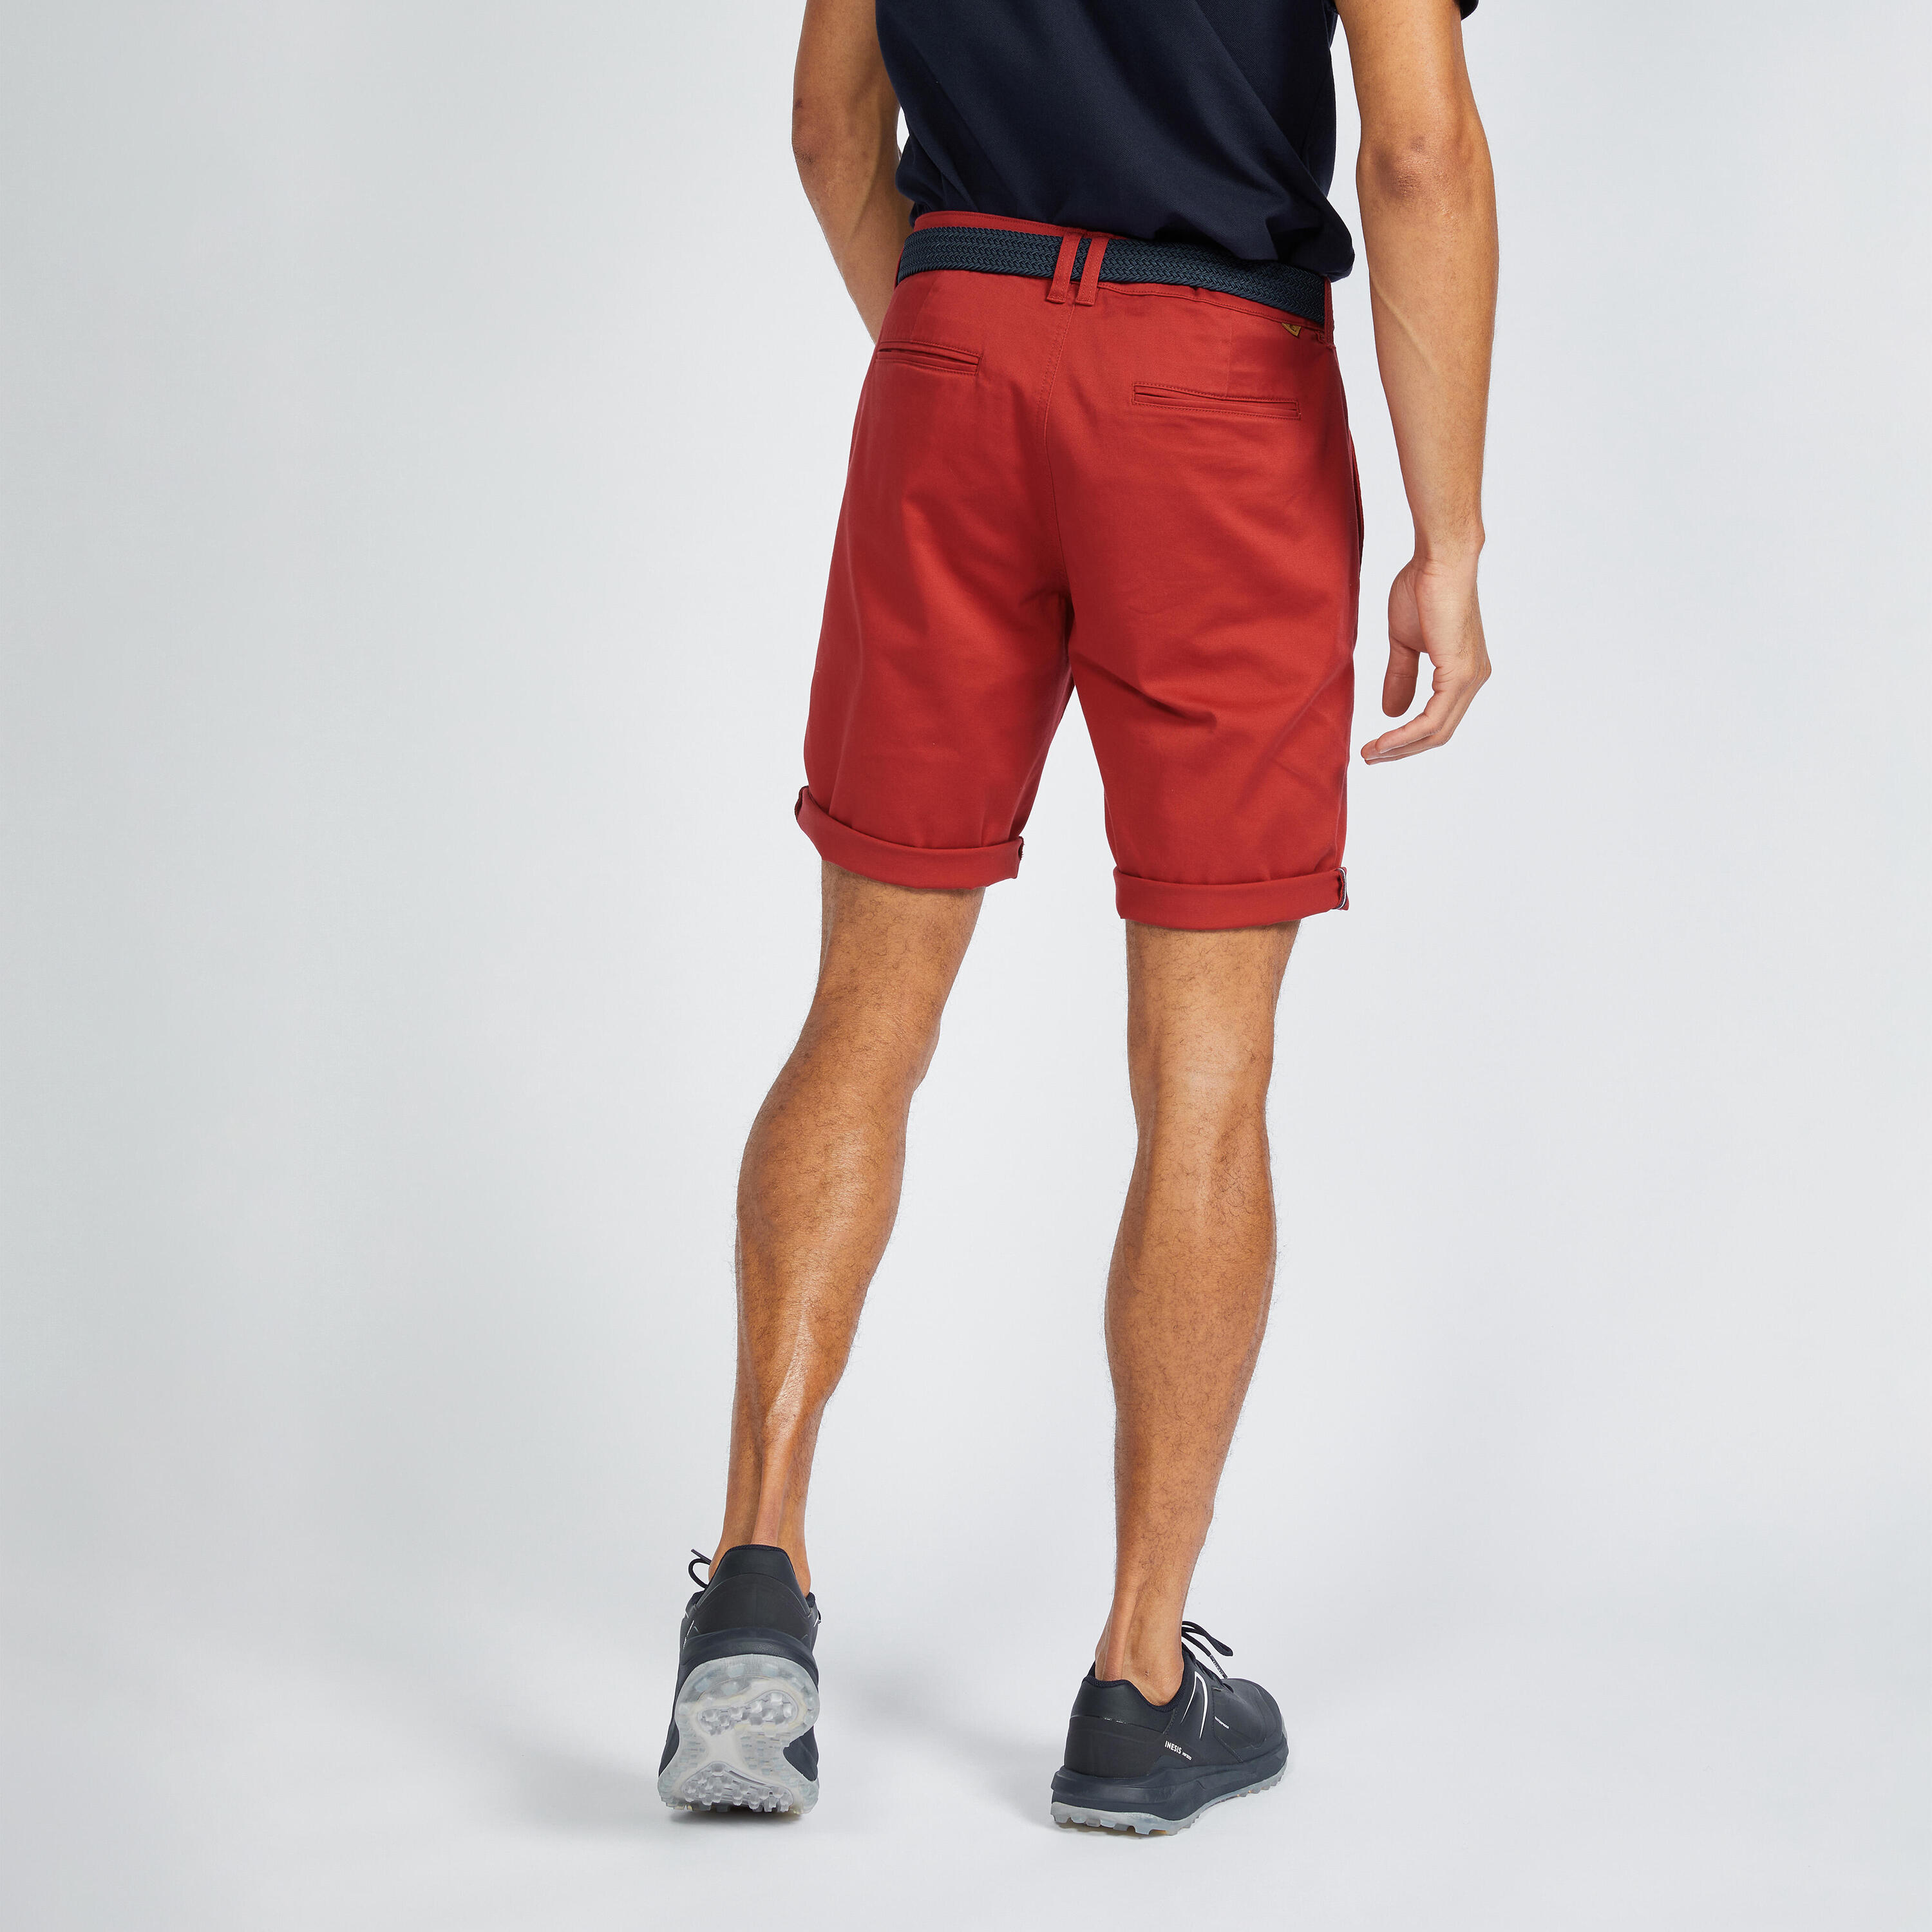 Men's golf chino shorts - MW500 dark red 2/6